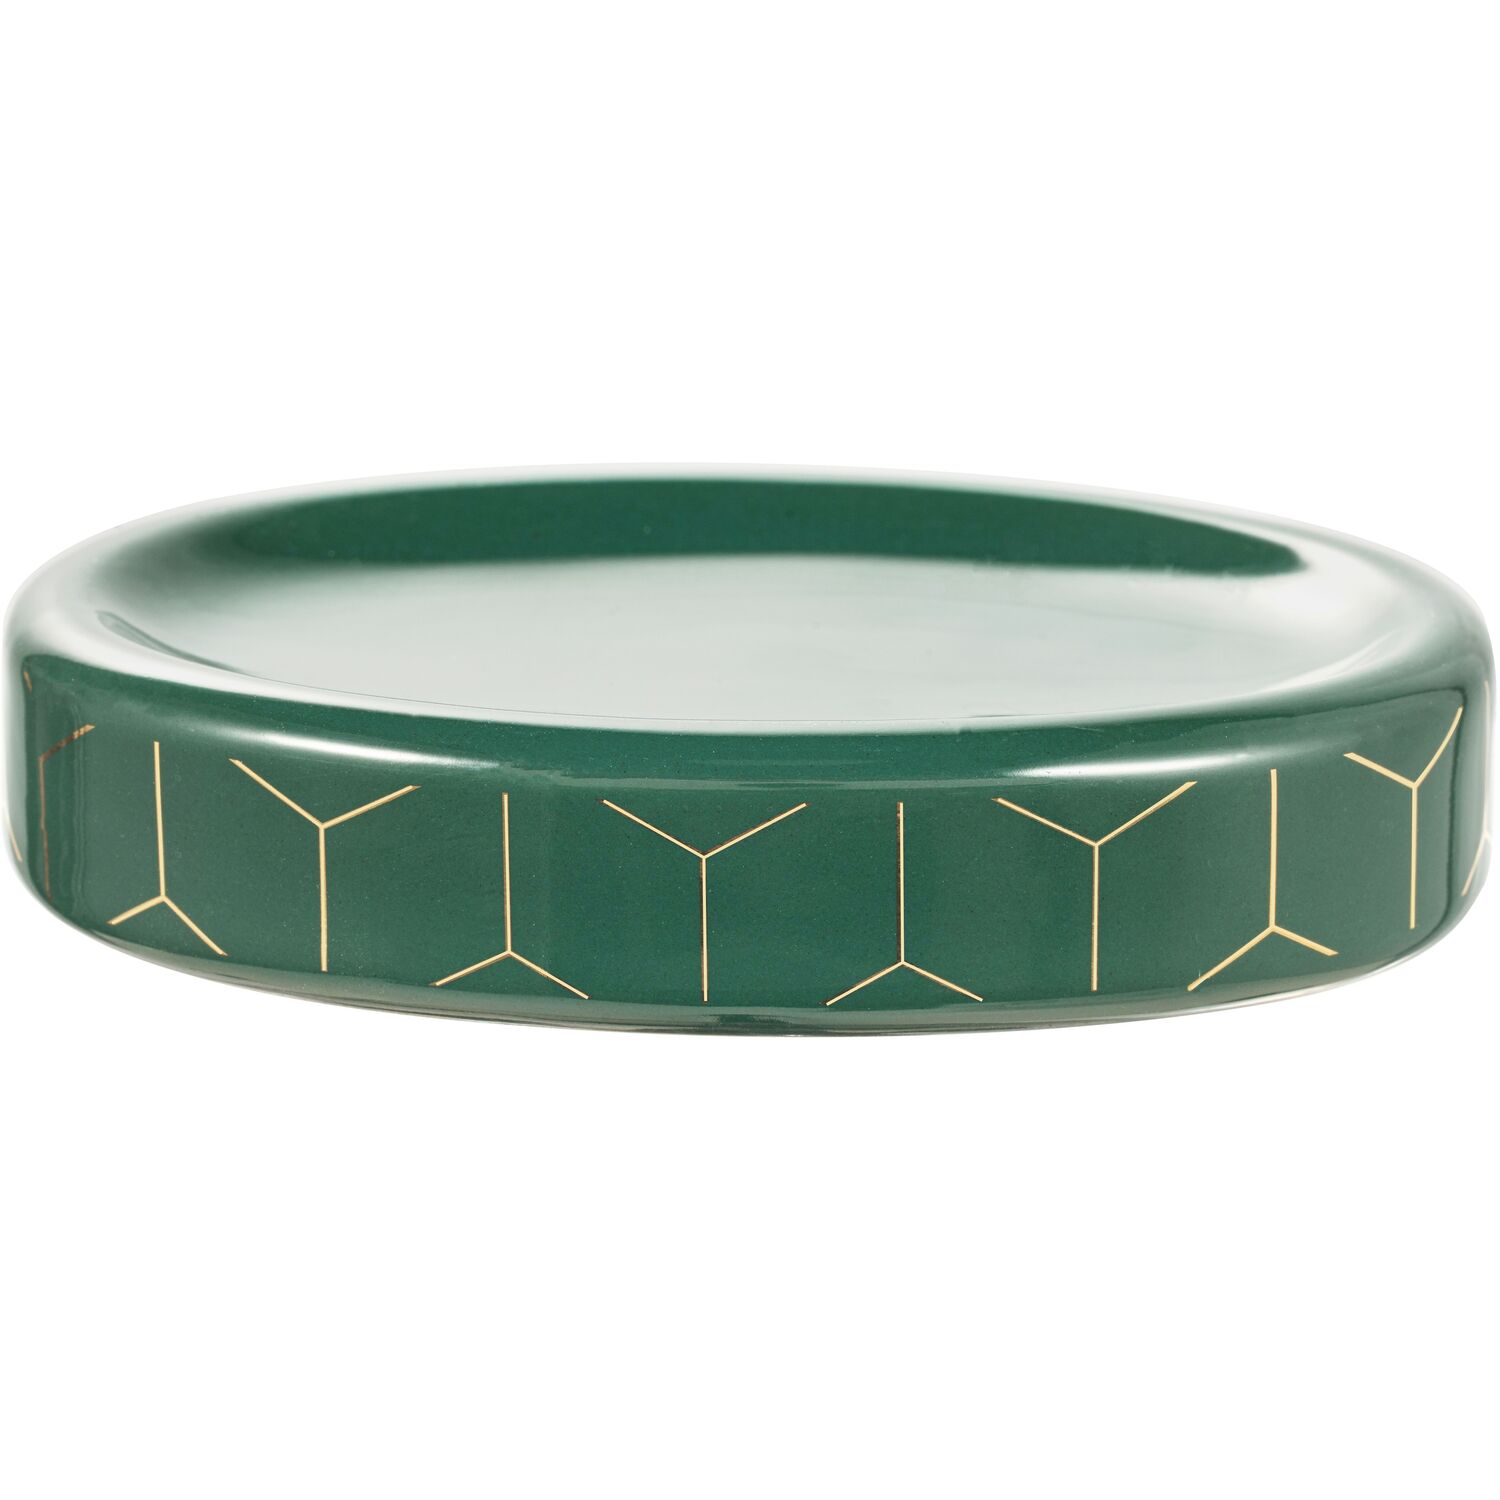 Ashley Soap Dish - Emerald Image 1